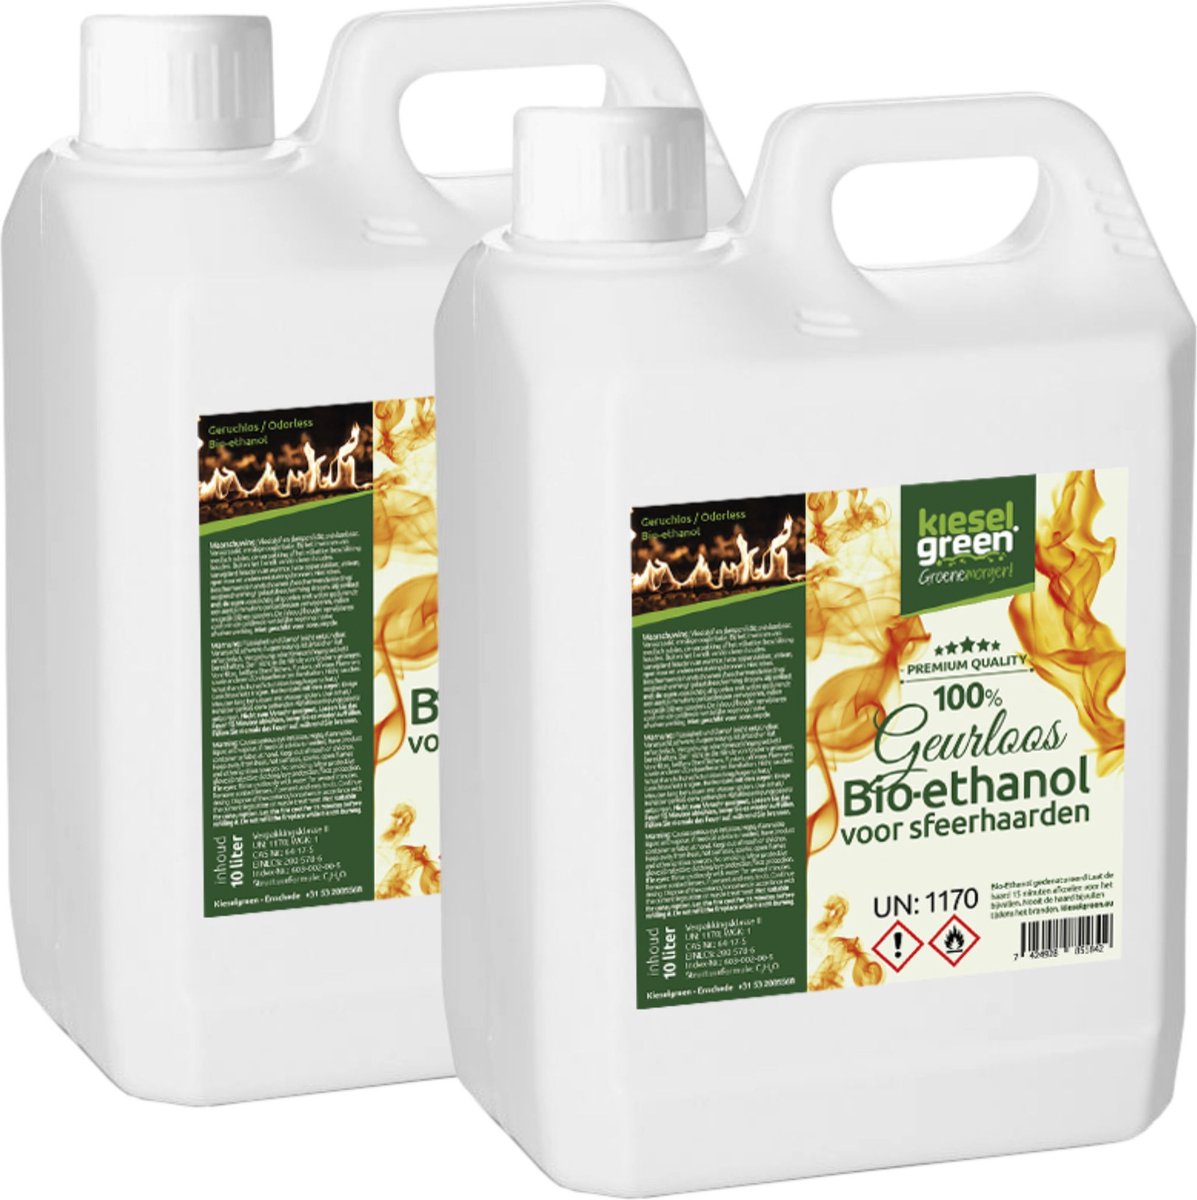 KieselGreen 20 Liter Bio-Ethanol Geurloos - Bioethanol 96.6%, Veilig voor Sfeerhaarden en Tafelhaarden, Milieuvriendelijk - Premium Kwaliteit Ethanol voor Binnen en Buiten